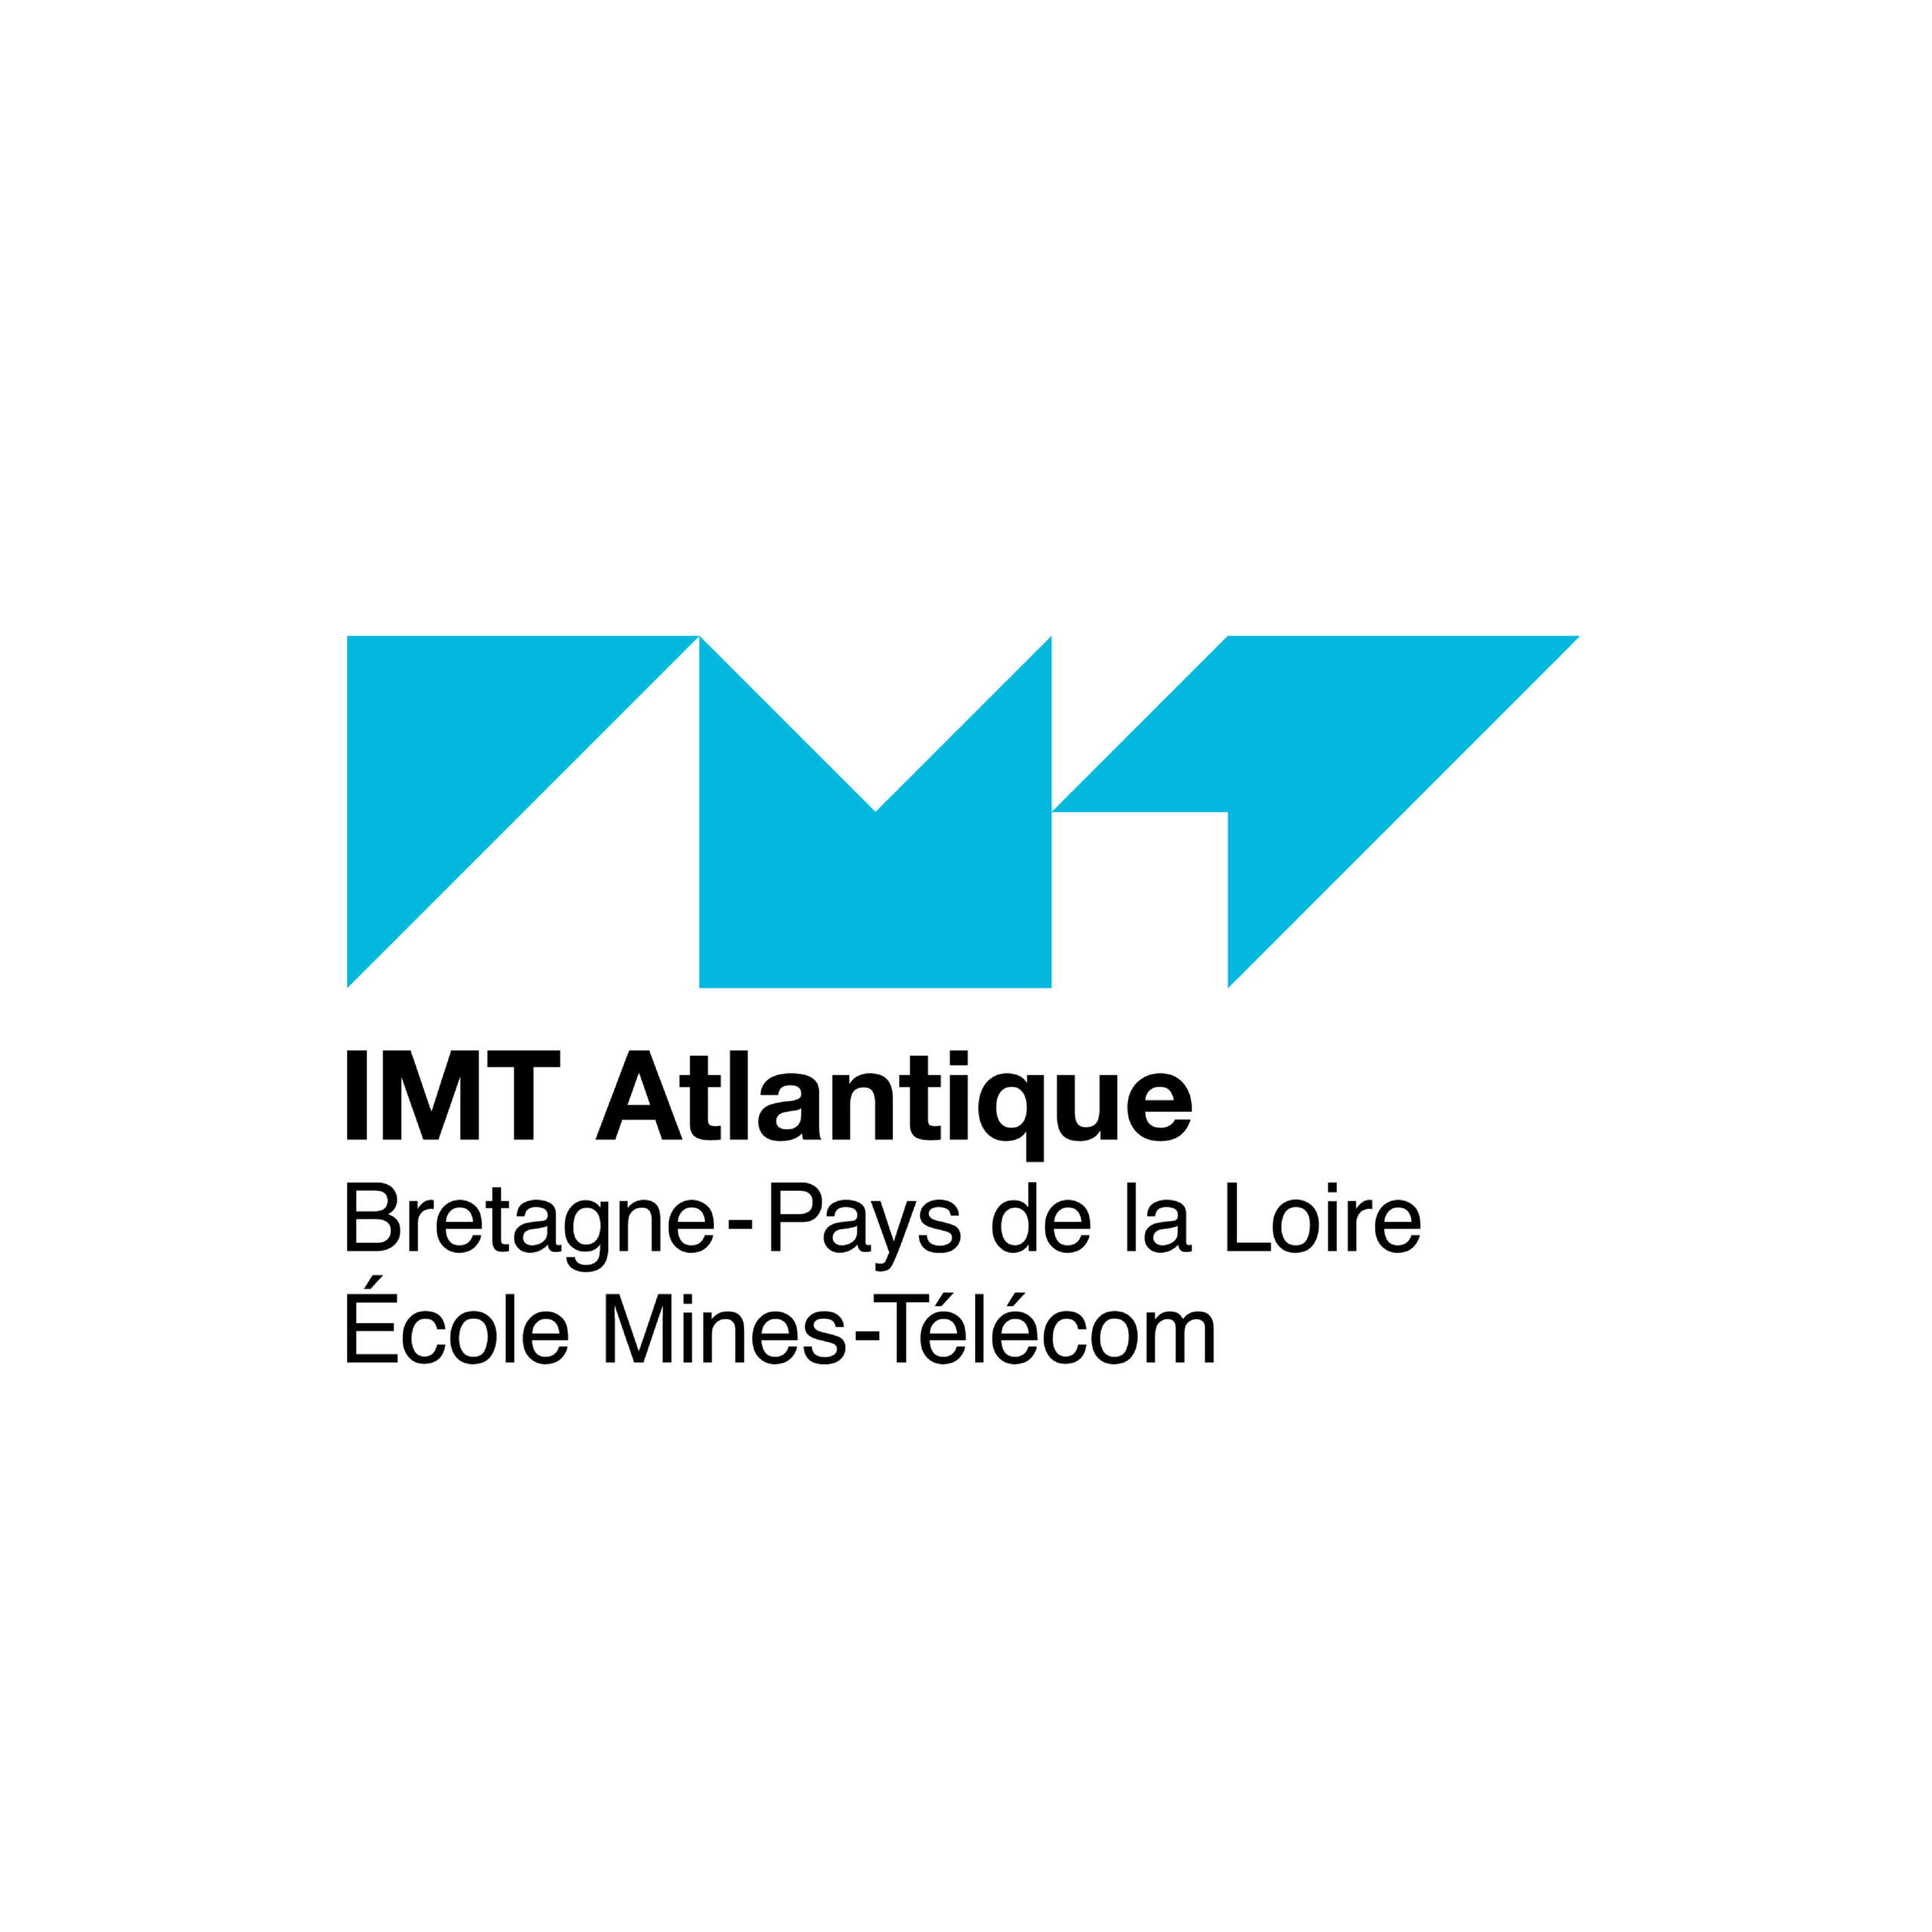 IMT Atlantique